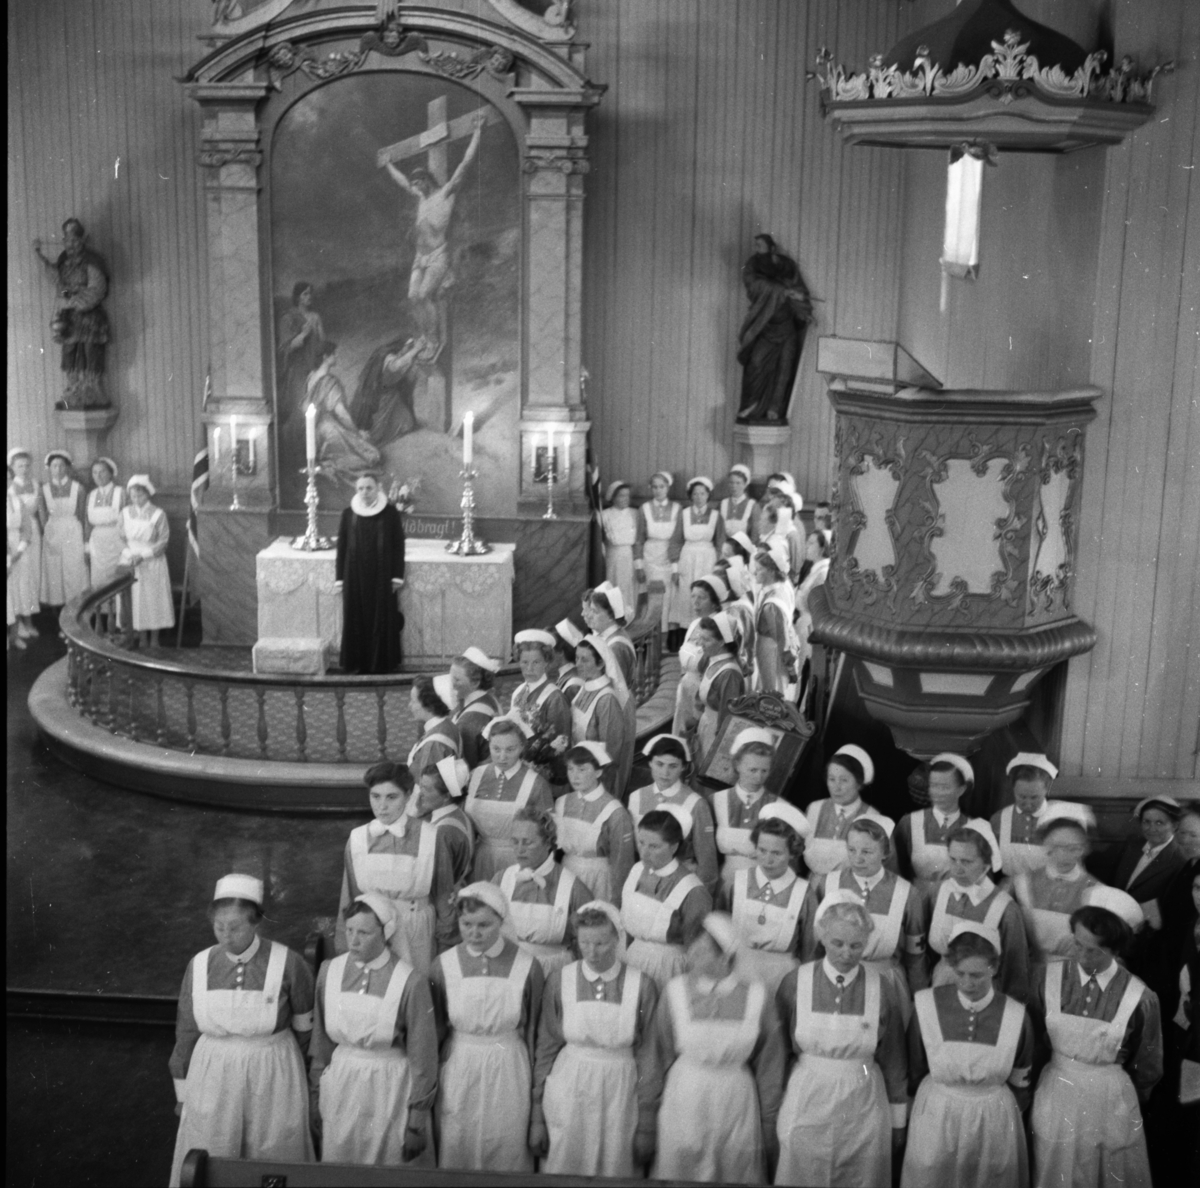 Vardens arkiv. "Prosesjon og gudstjeneste til minne om Florence Nightingale i Porsgrunn"  12.05.1954